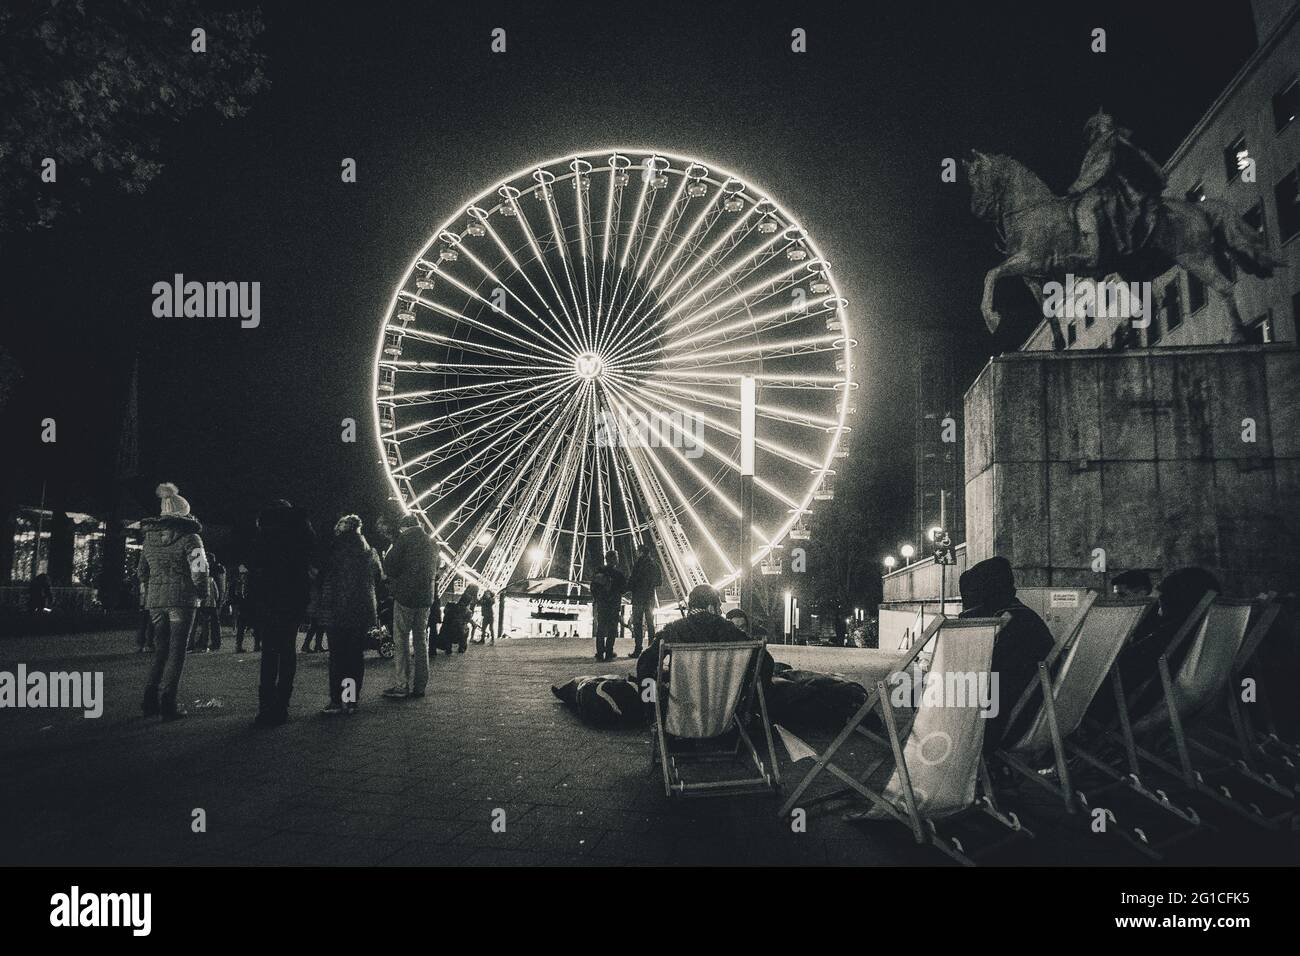 Essen City bei Nacht im Tunnel. Surreal schwarzweiss monochrom Aufnahme. Riesenrad und Mondschein. Mond Krater Surreal Stock Photo